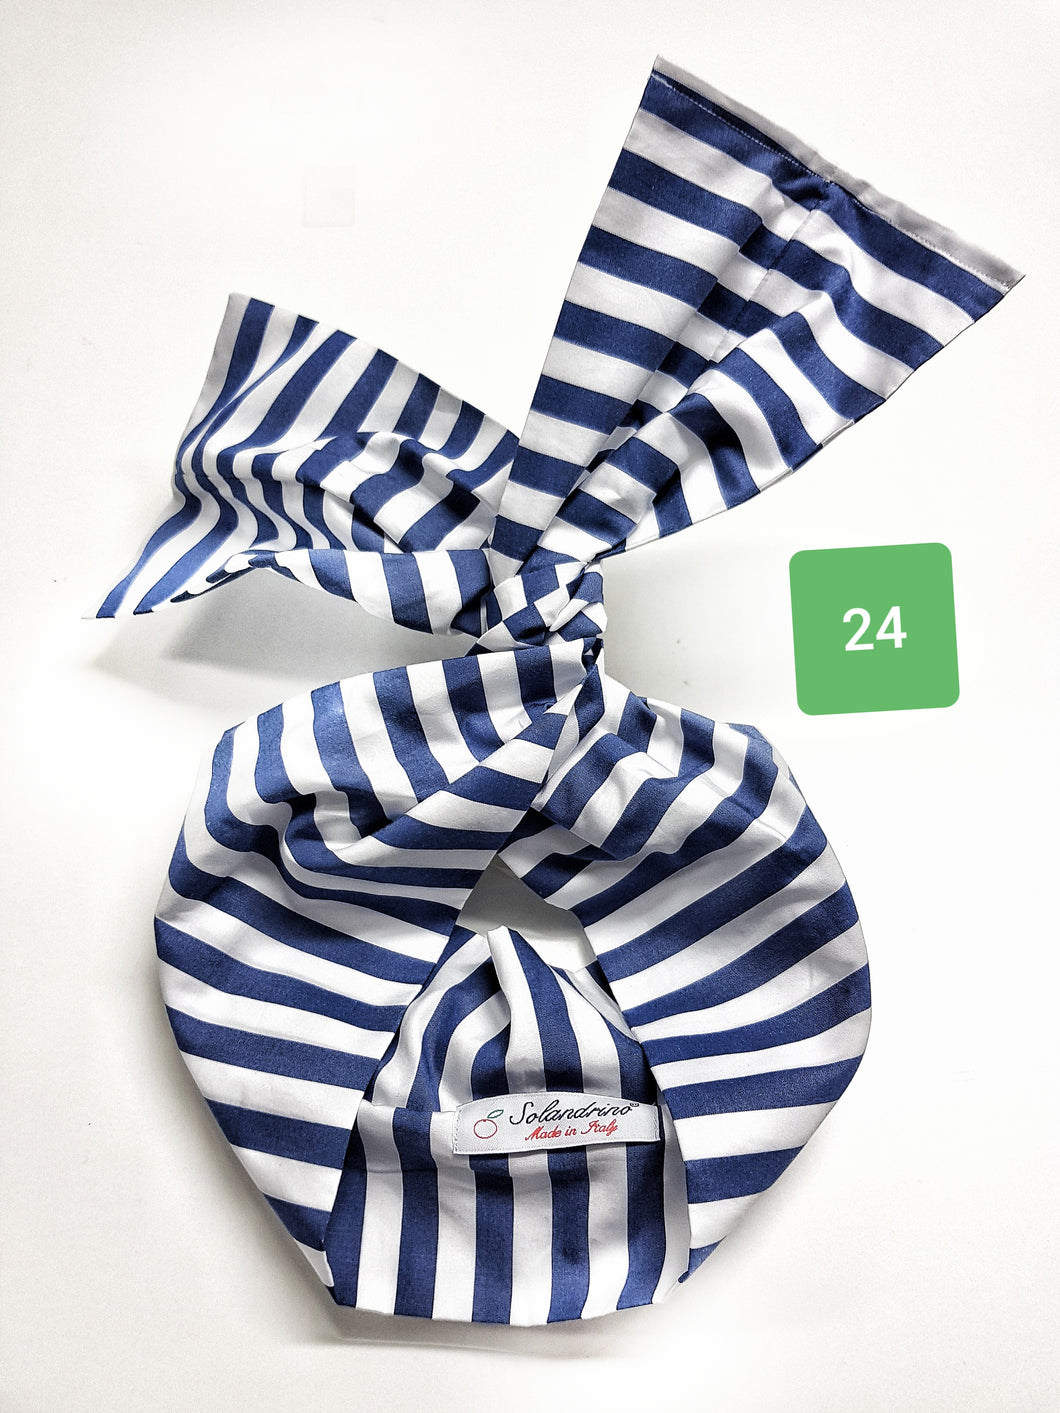 Turbante Fashion in cotone Fantasia design fascia bianco blu 24 Made in Italy